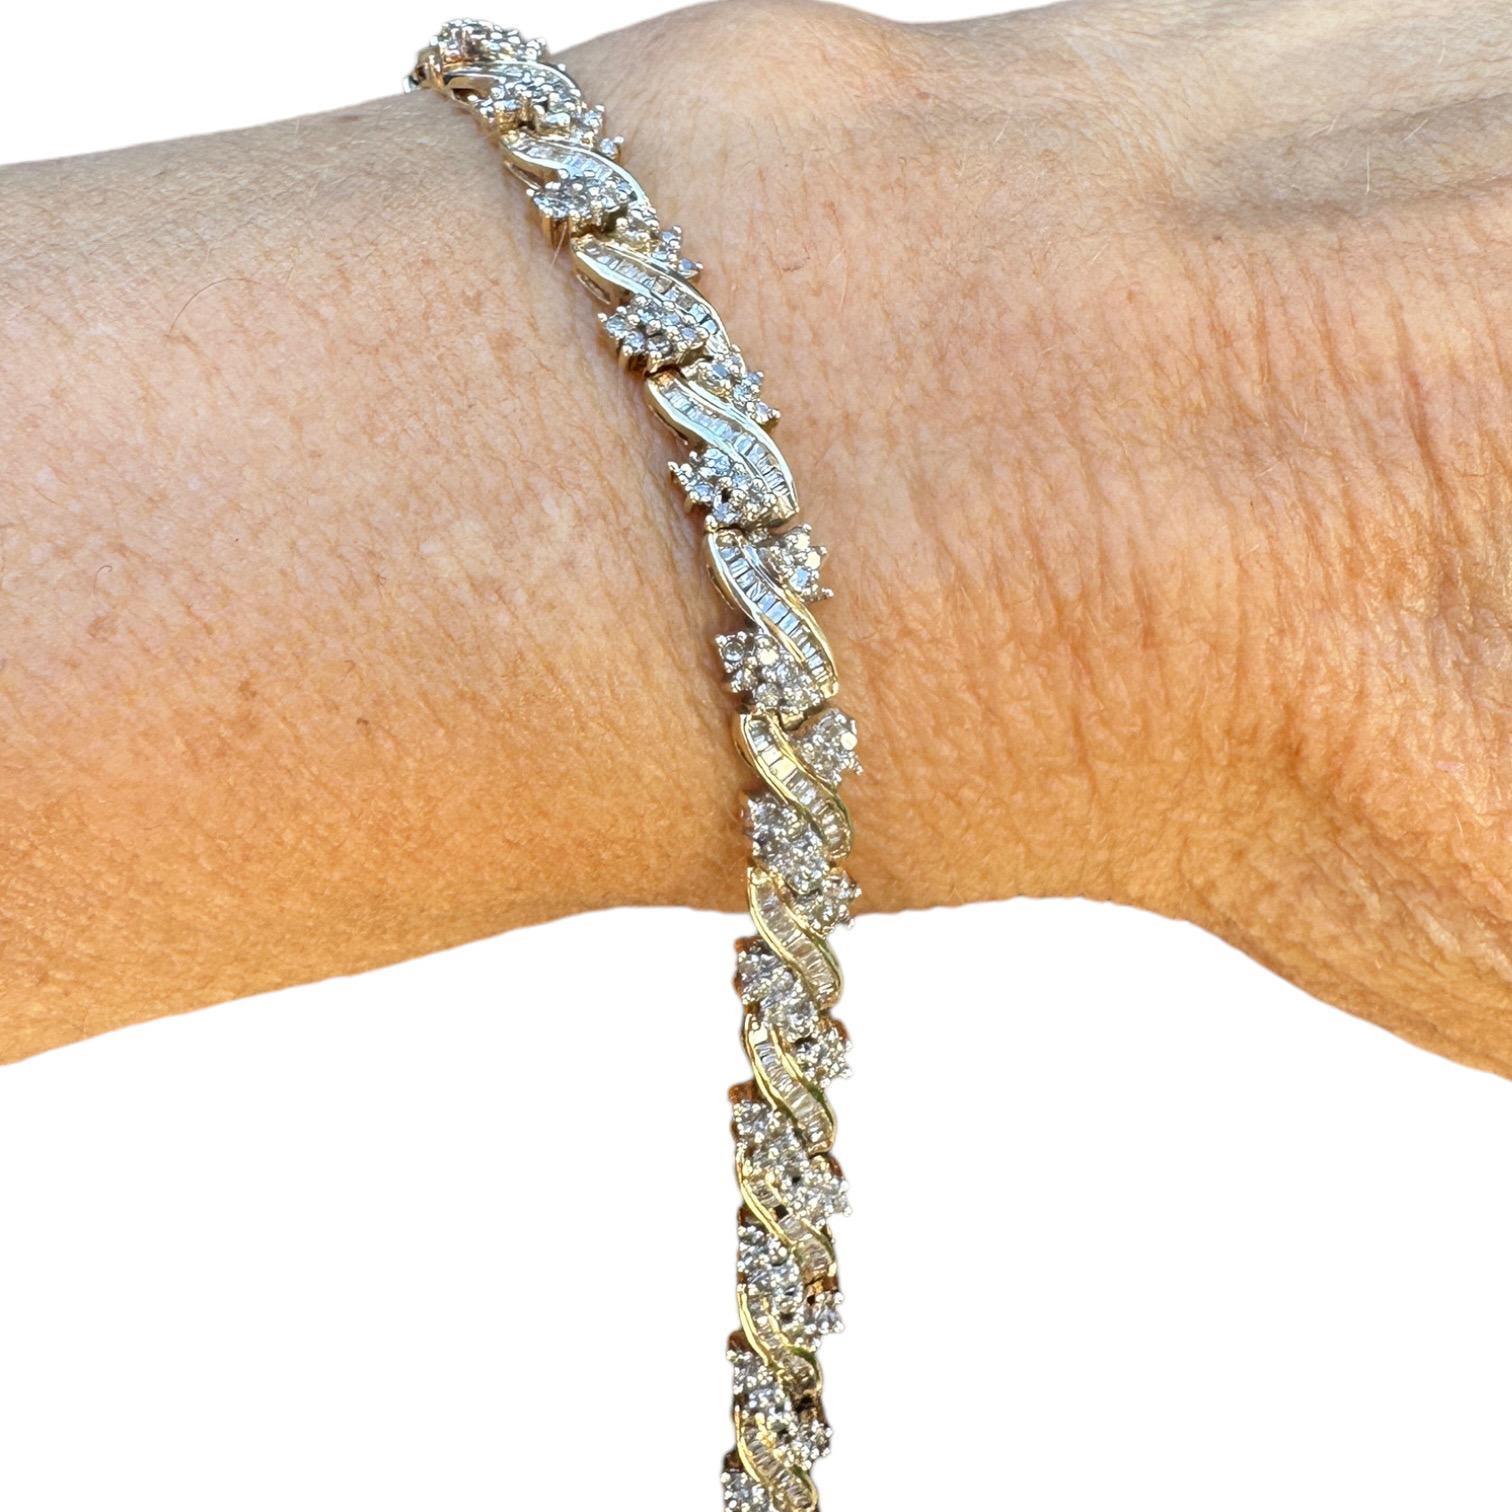 Dieses 10-karätige Diamant-Baguette-Gliederarmband ist die perfekte Möglichkeit, jedem Look ein brillantes Funkeln zu verleihen. Dieses detailreich gearbeitete Gliederarmband mit Diamantclustern bringt jeden zum Funkeln.

Gliederarmband aus 10 Karat